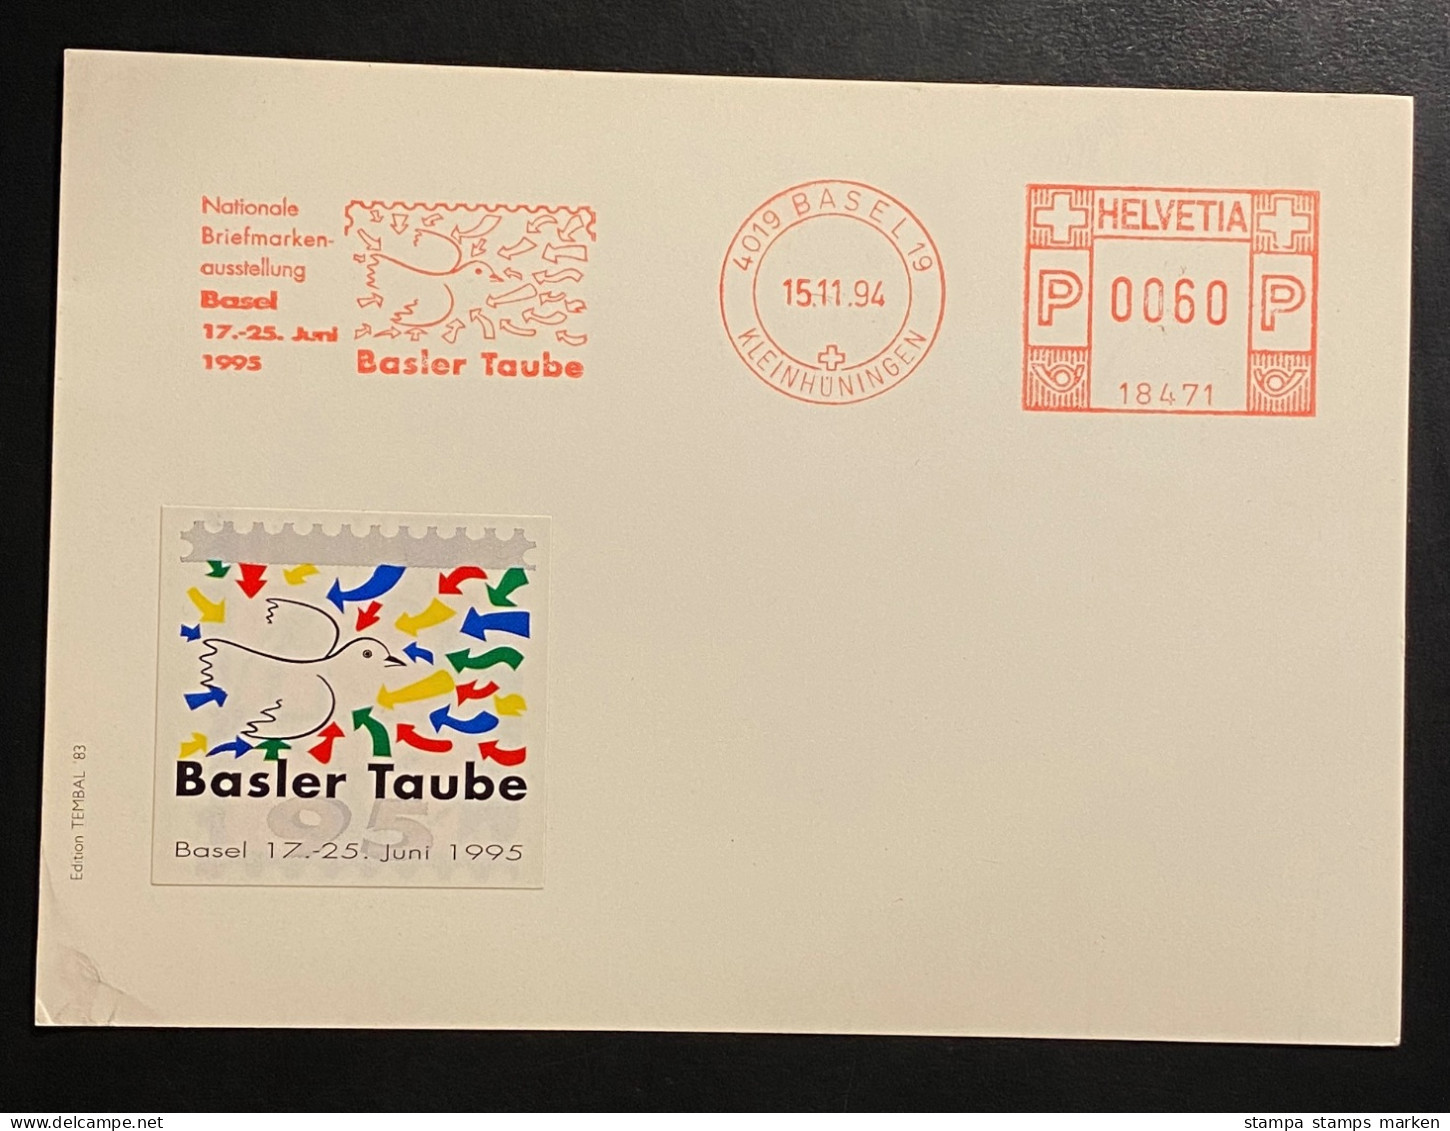 Schweiz 1994 Freistempel Basler Taube Auf Postkarte - Frankiermaschinen (FraMA)